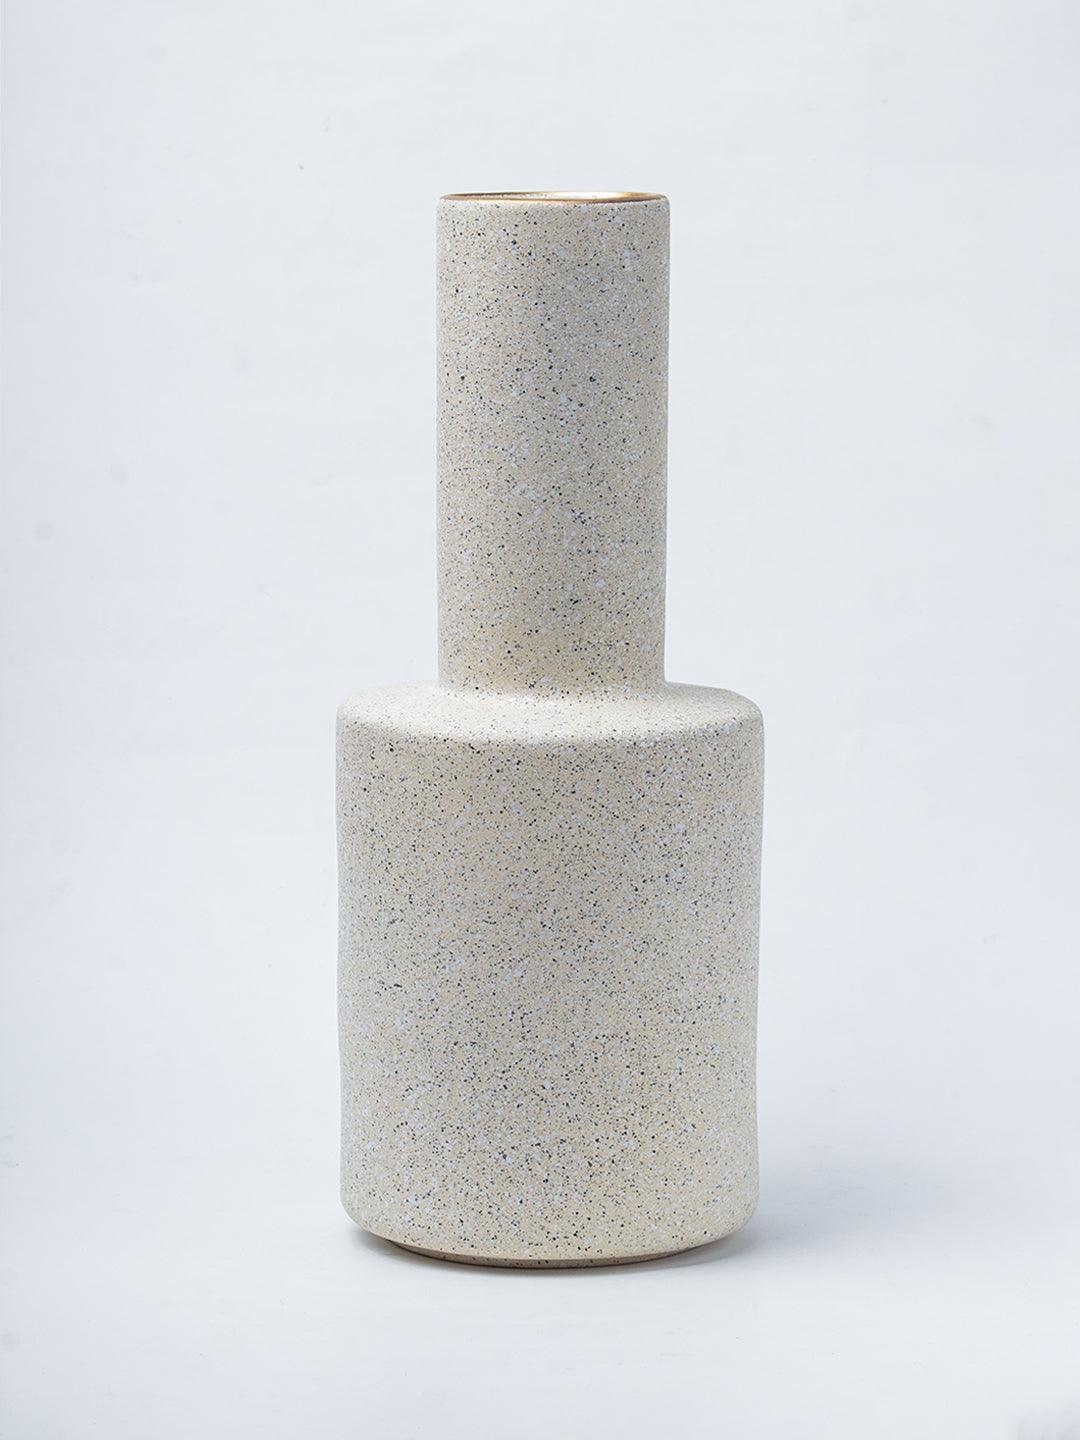 Stylish Flower Holder Vase - Off White, Stone Finish - 2